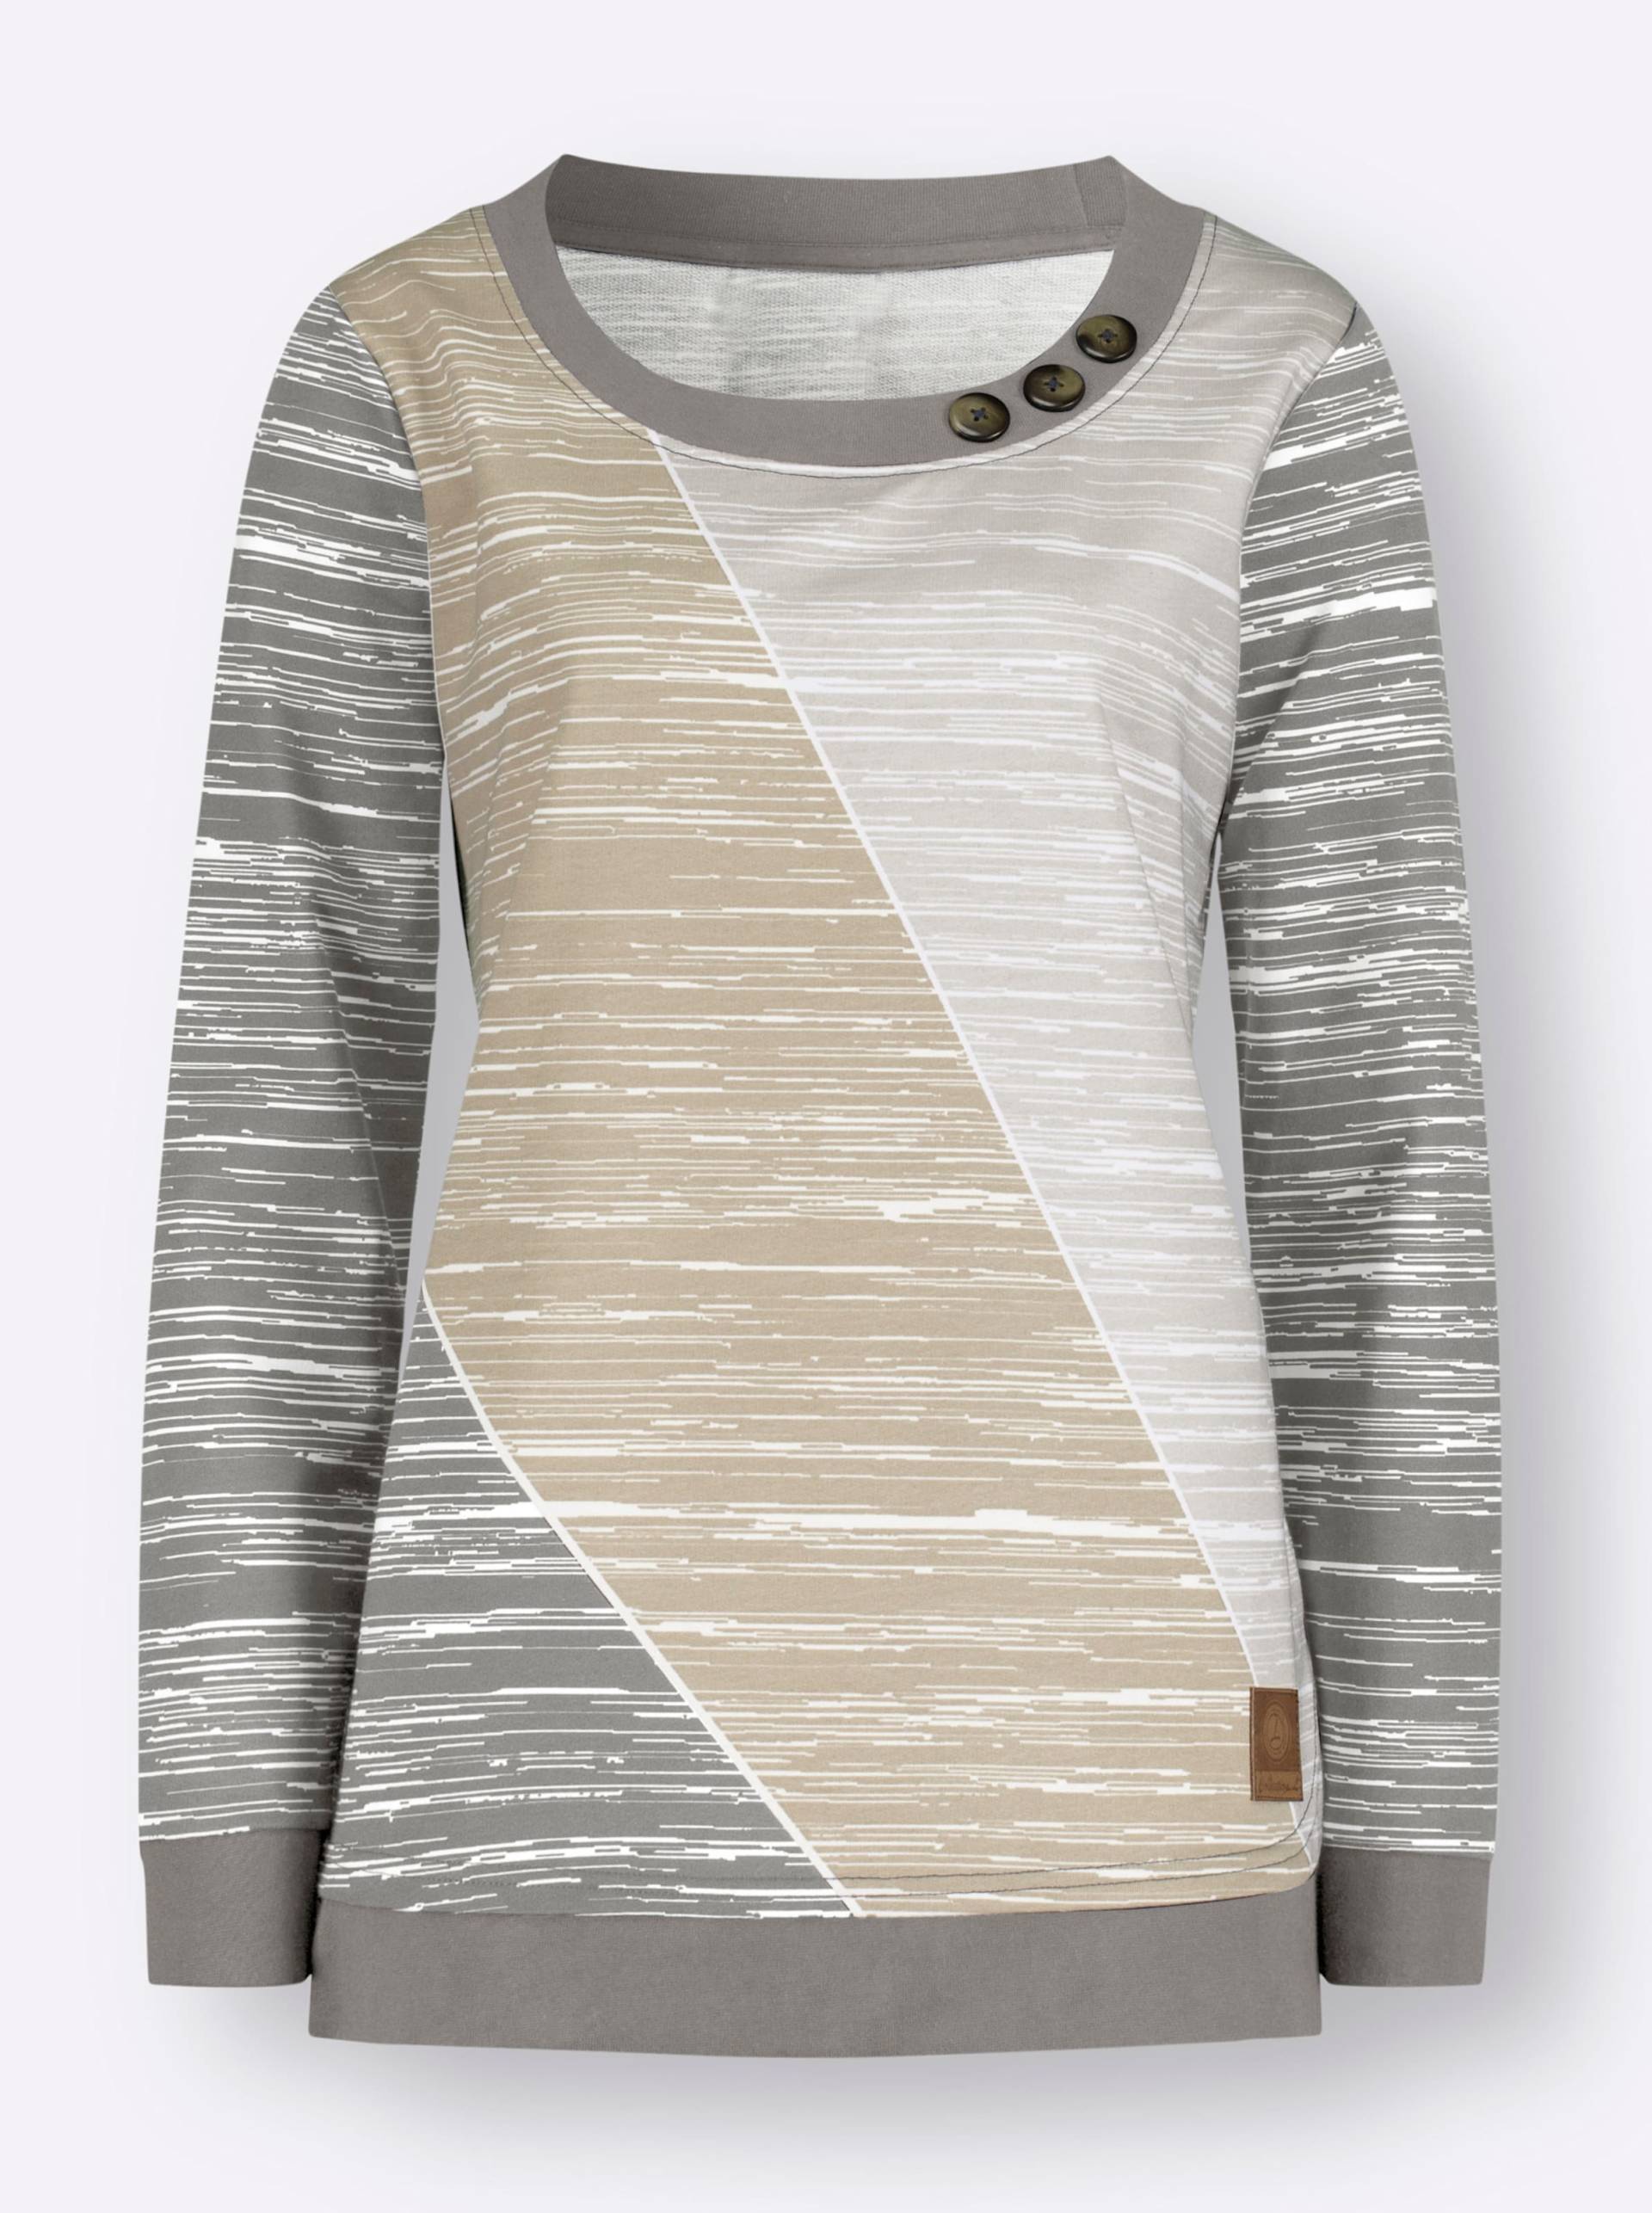 Sweatshirt in grau-ecru-bedruckt von heine von heine